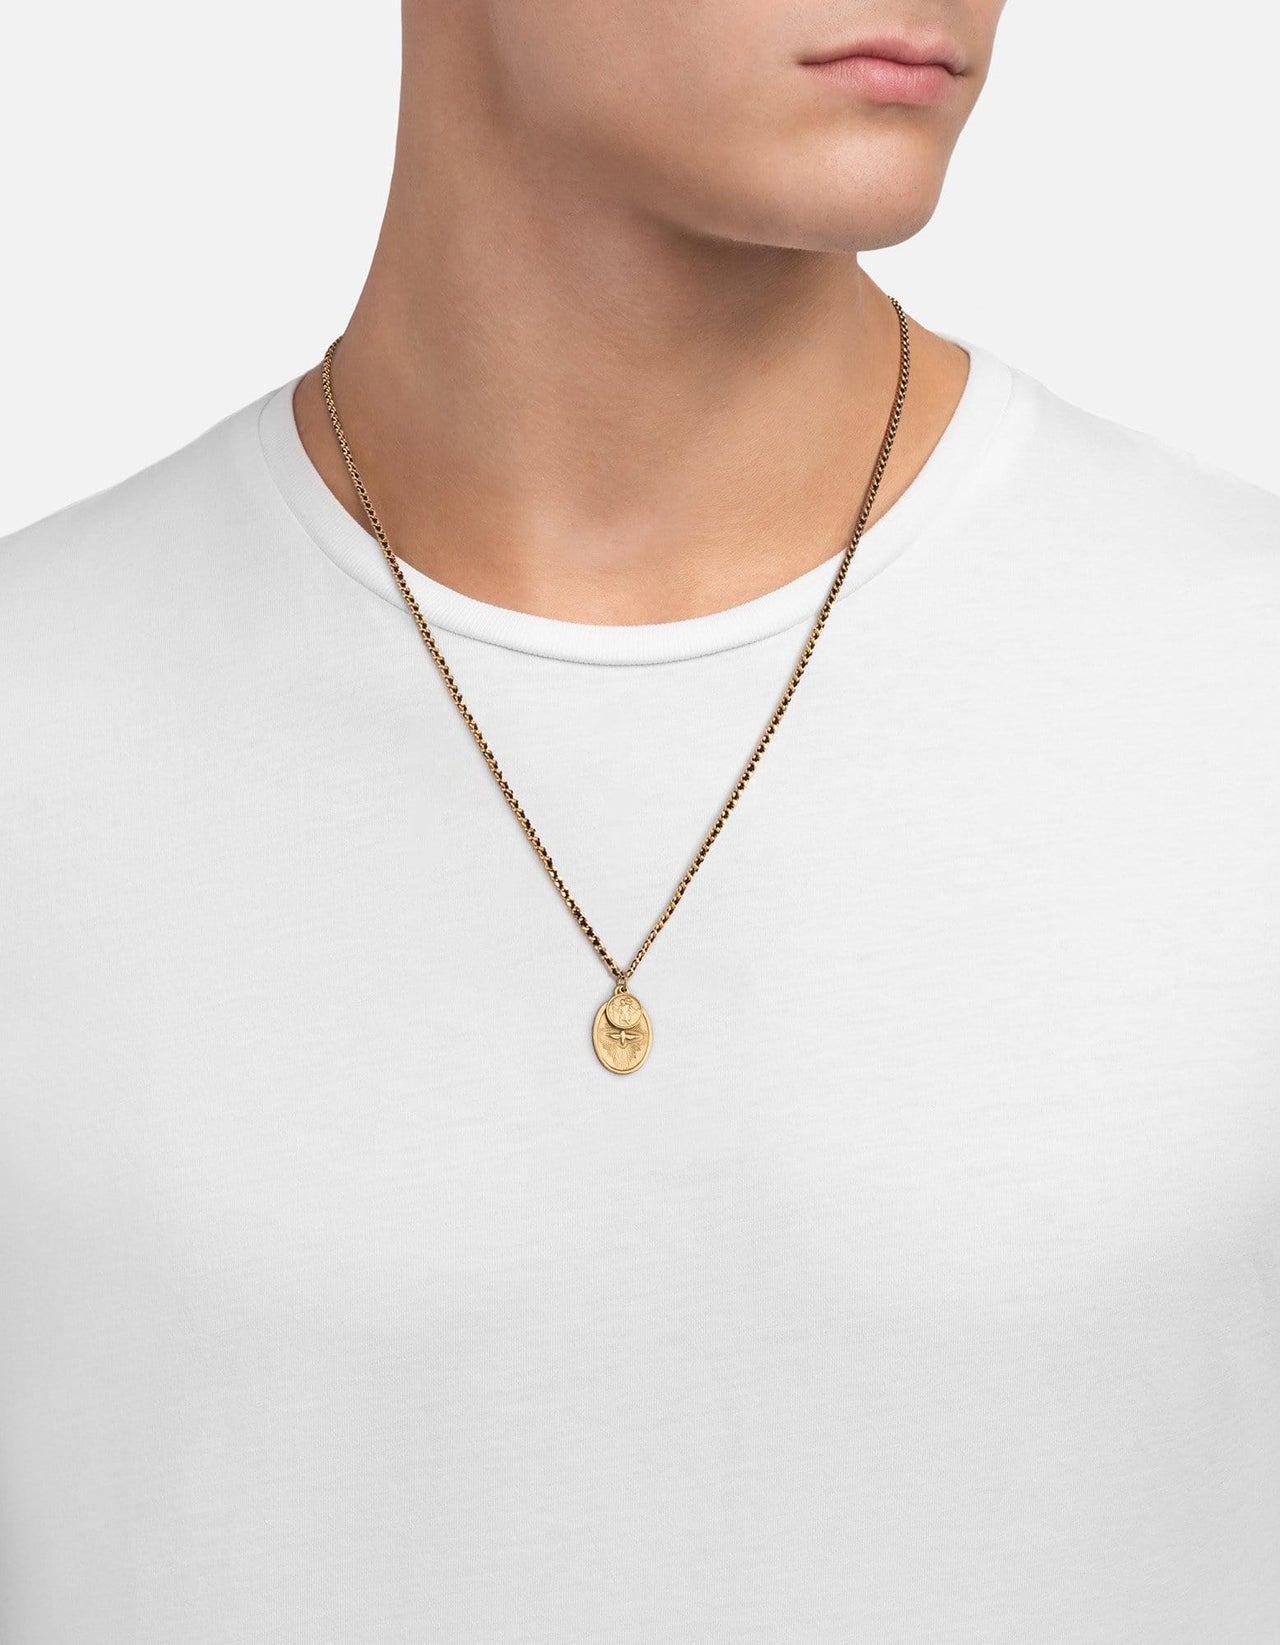 Dove Pendant 2mm Woven Chain Necklace, Navy/Matte Gold | Men's ...